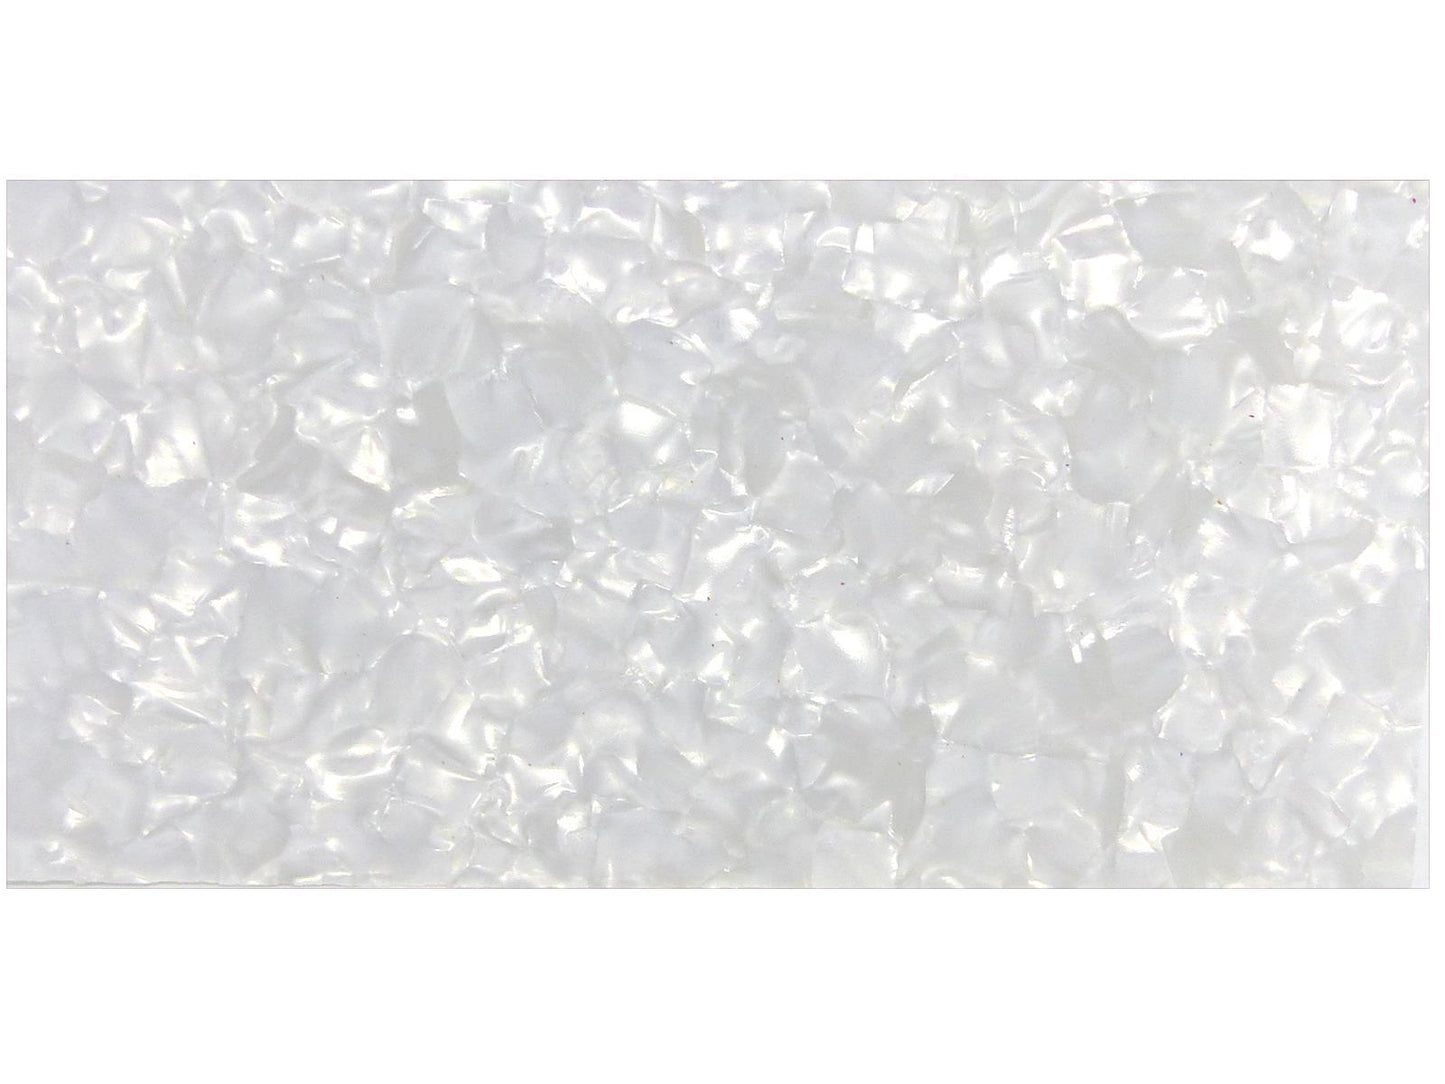 Incudo White Pearloid Celluloid Sheet - 200x100x0.96mm (7.9x3.94x0.04")